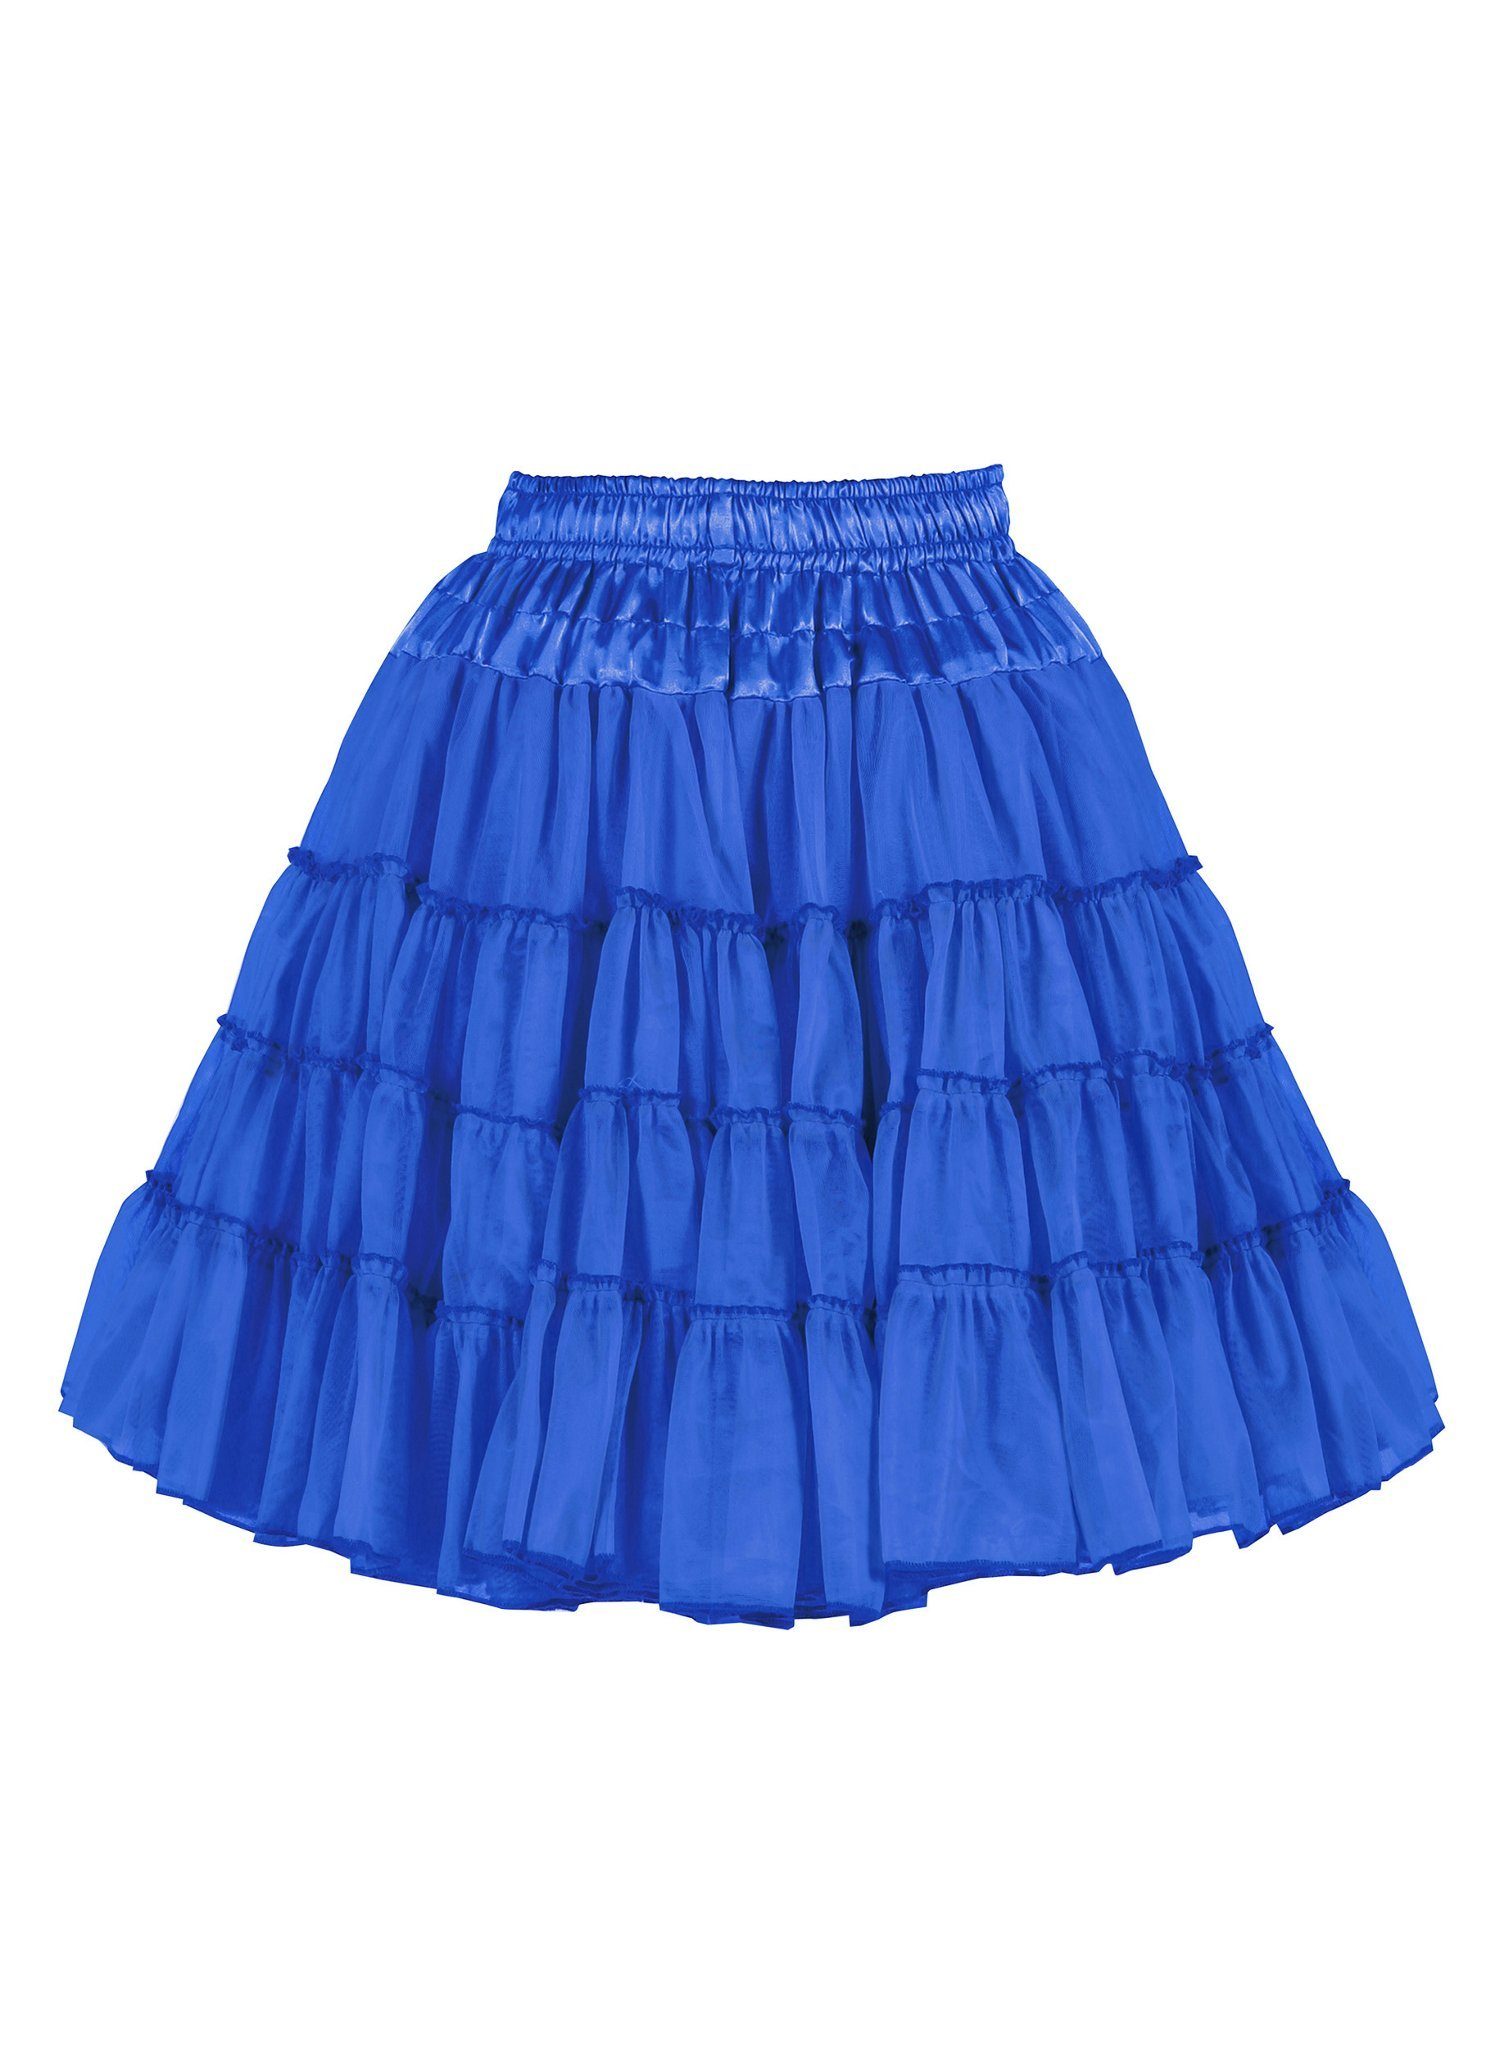 thetru Kostüm Petticoat Deluxe blau 2-lagig, Mittellanger Unterrock in zwei Lagen und vier Stufen